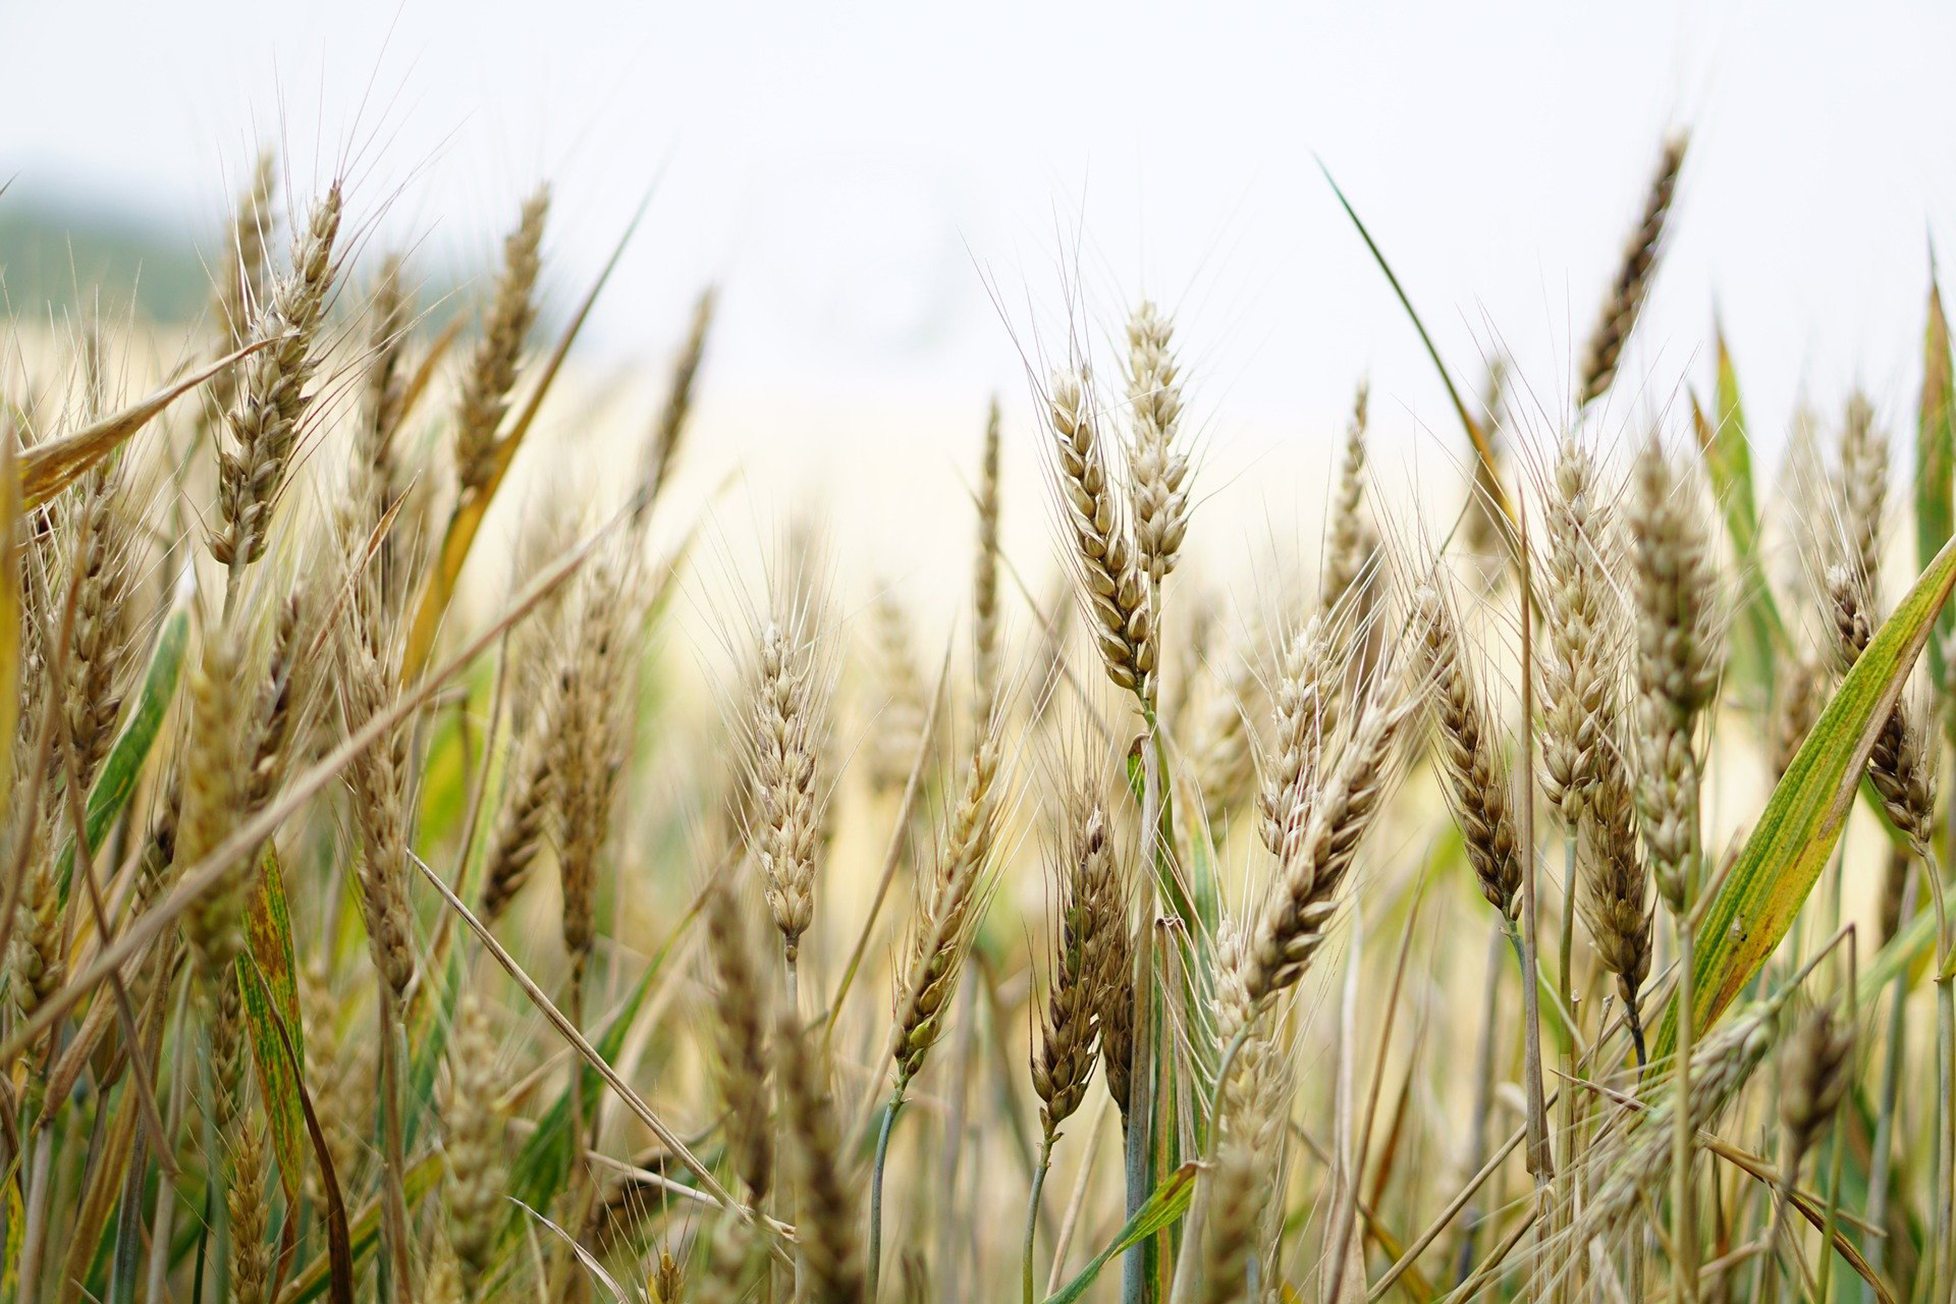 En France, les semis de variétés pures de blé tendre sont les plus répandus (82 % de la sole), mais de plus en plus d’agriculteurs ont recours à des mélanges de variétés. 